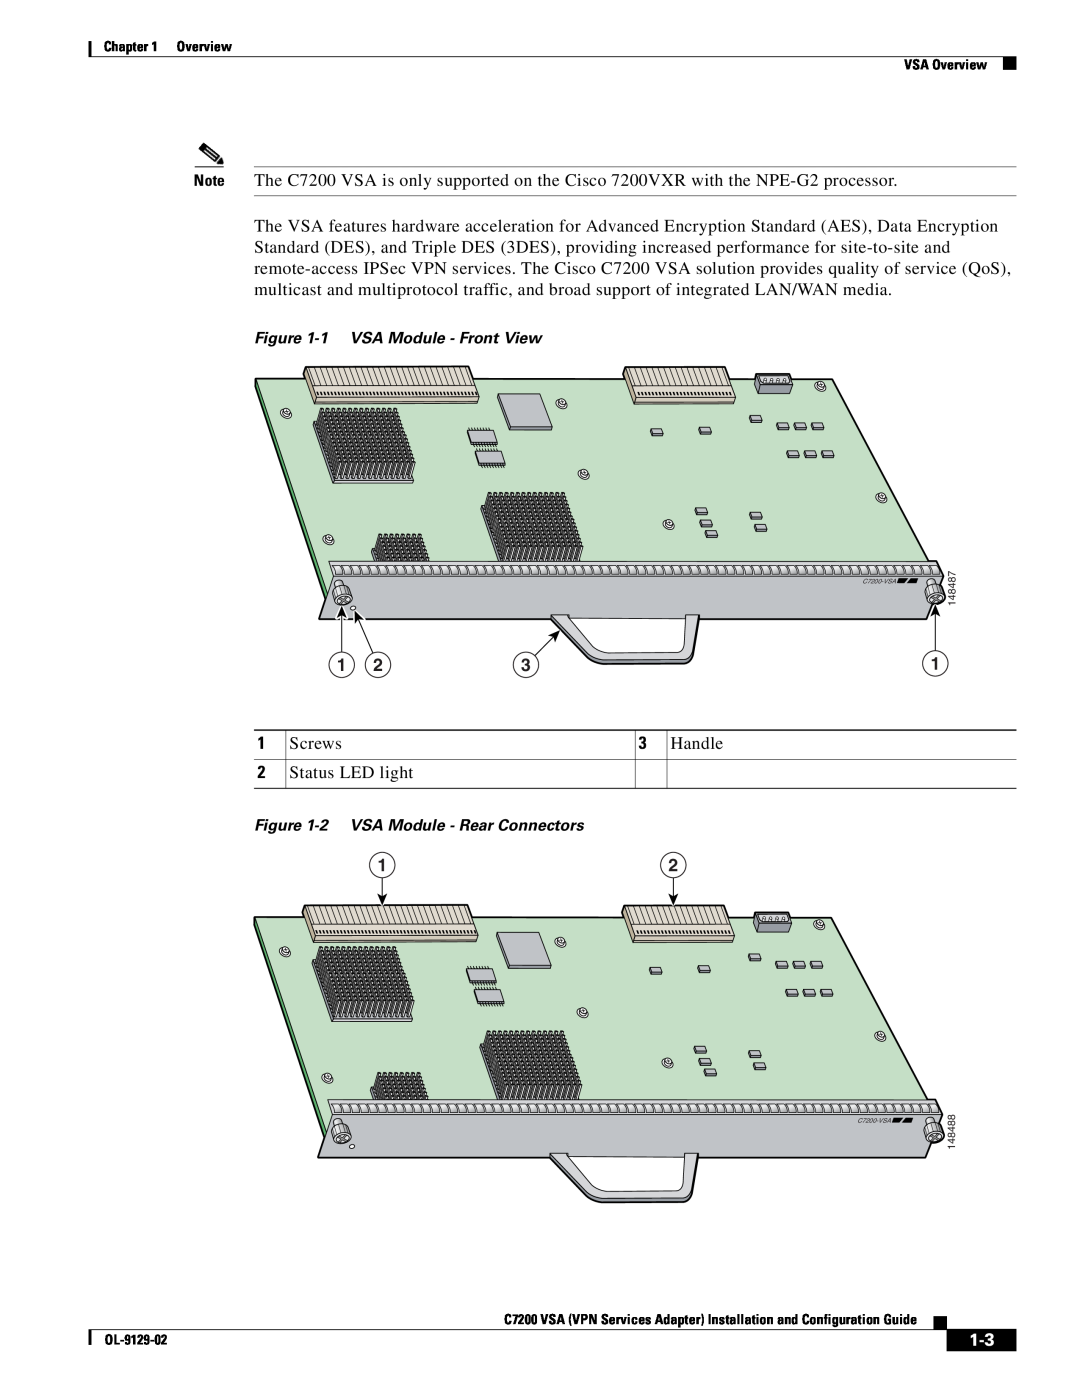 Cisco Systems C7200 manual Screws 